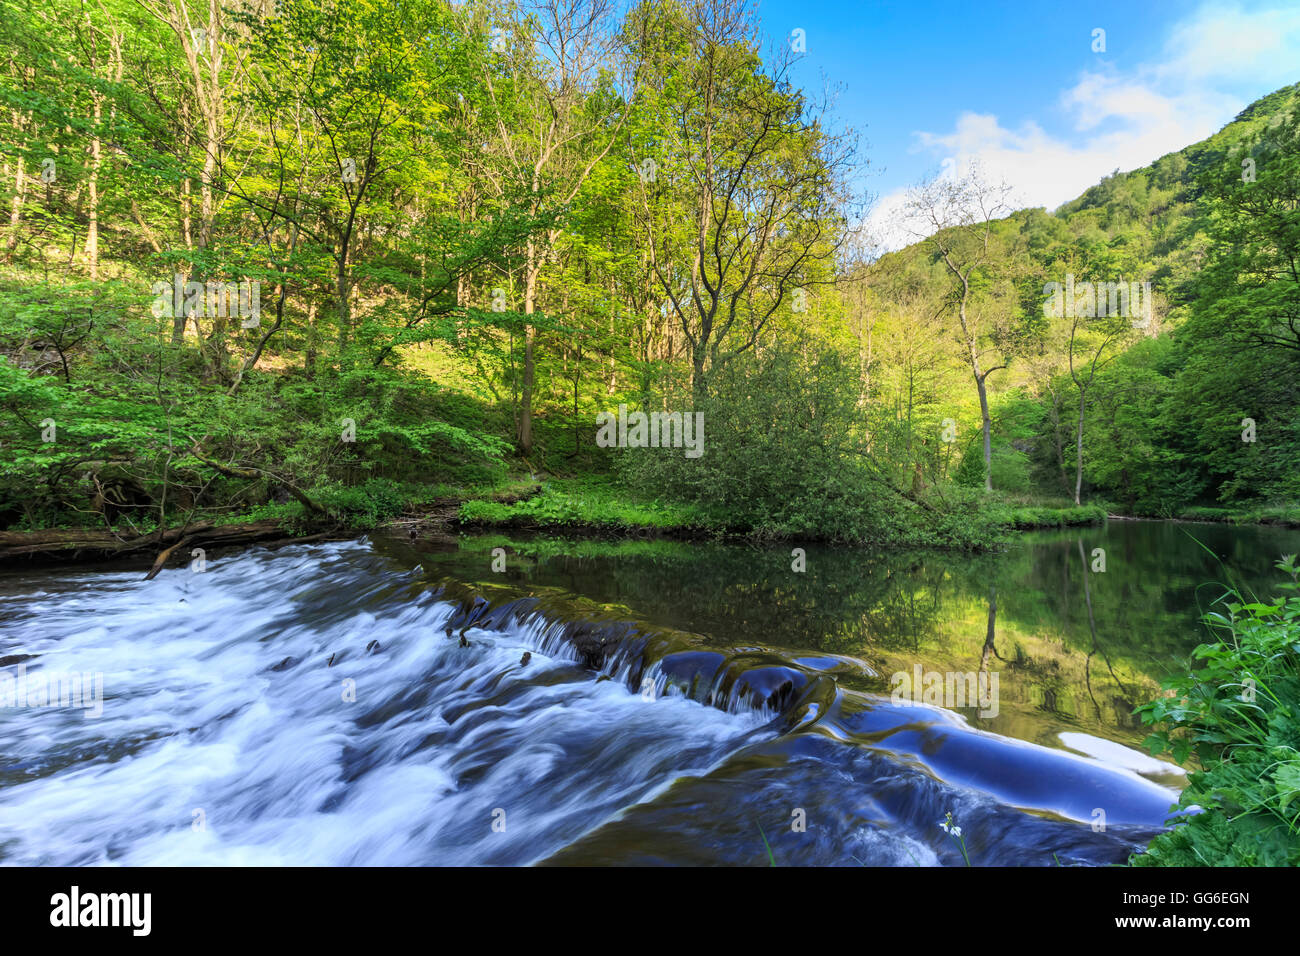 Fluss Wye mit Wehr verläuft durch grünen Holz in Millers Dale, Reflexionen in ruhigem Wasser, Peak District, Derbyshire, England, UK Stockfoto